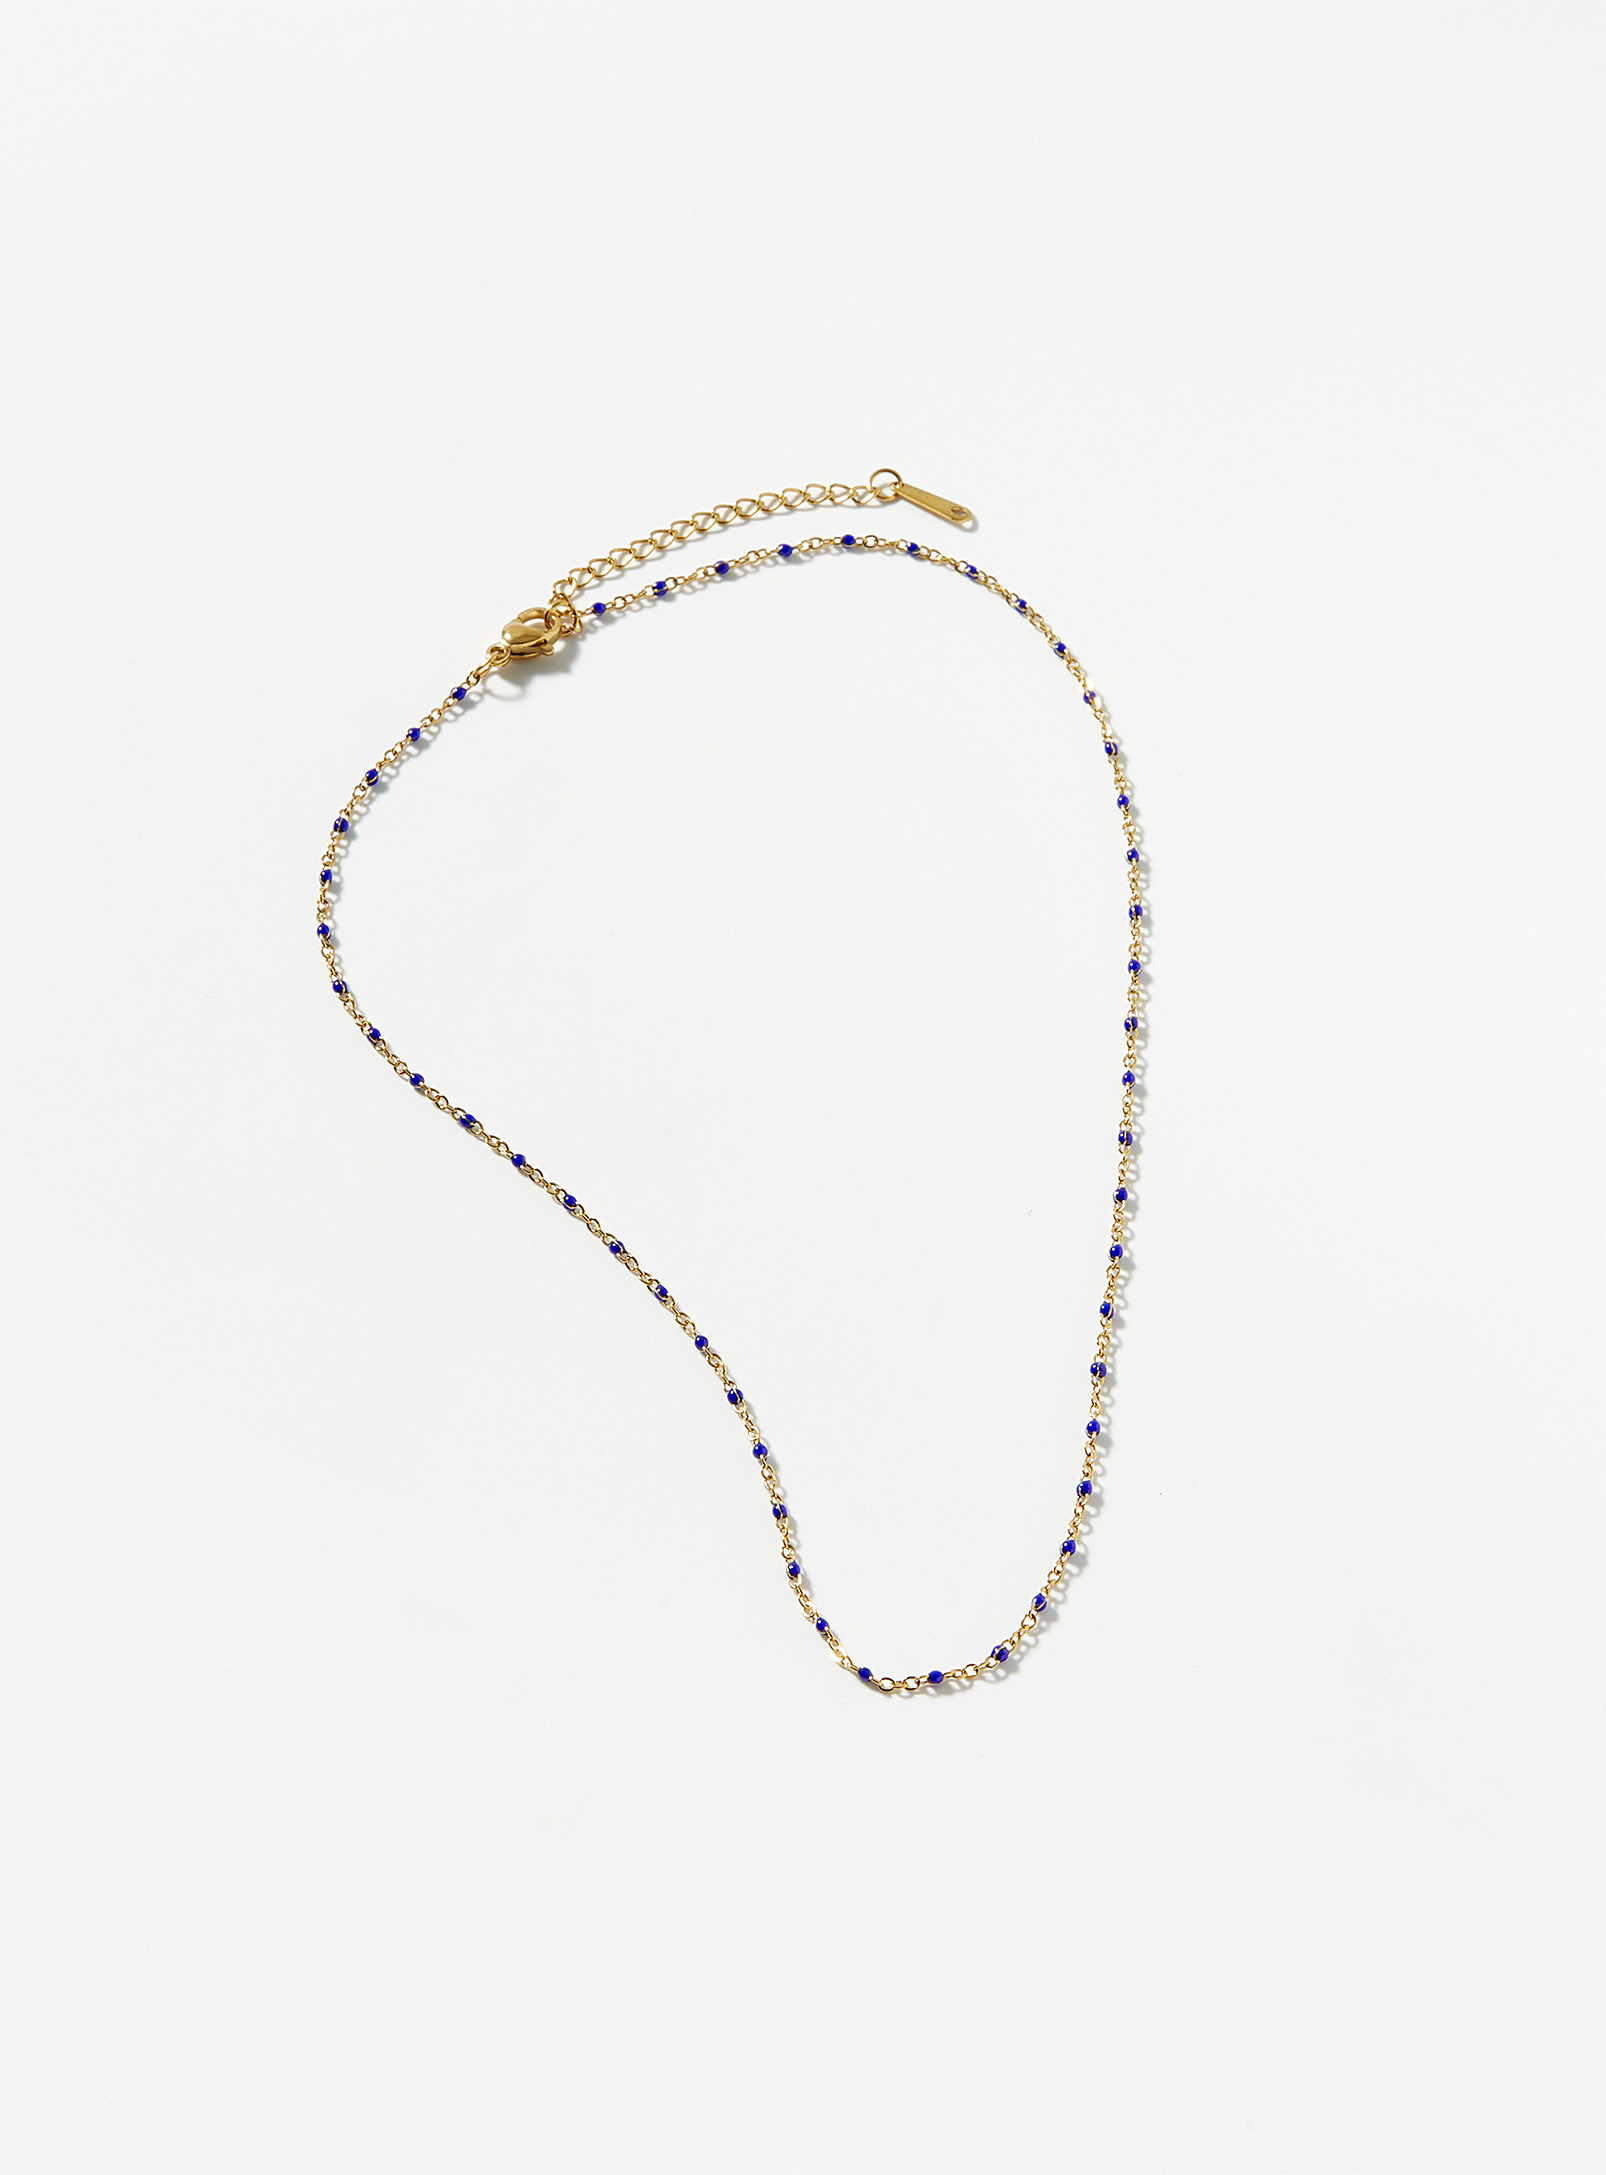 Simons - Women's Royal-blue beaded chain